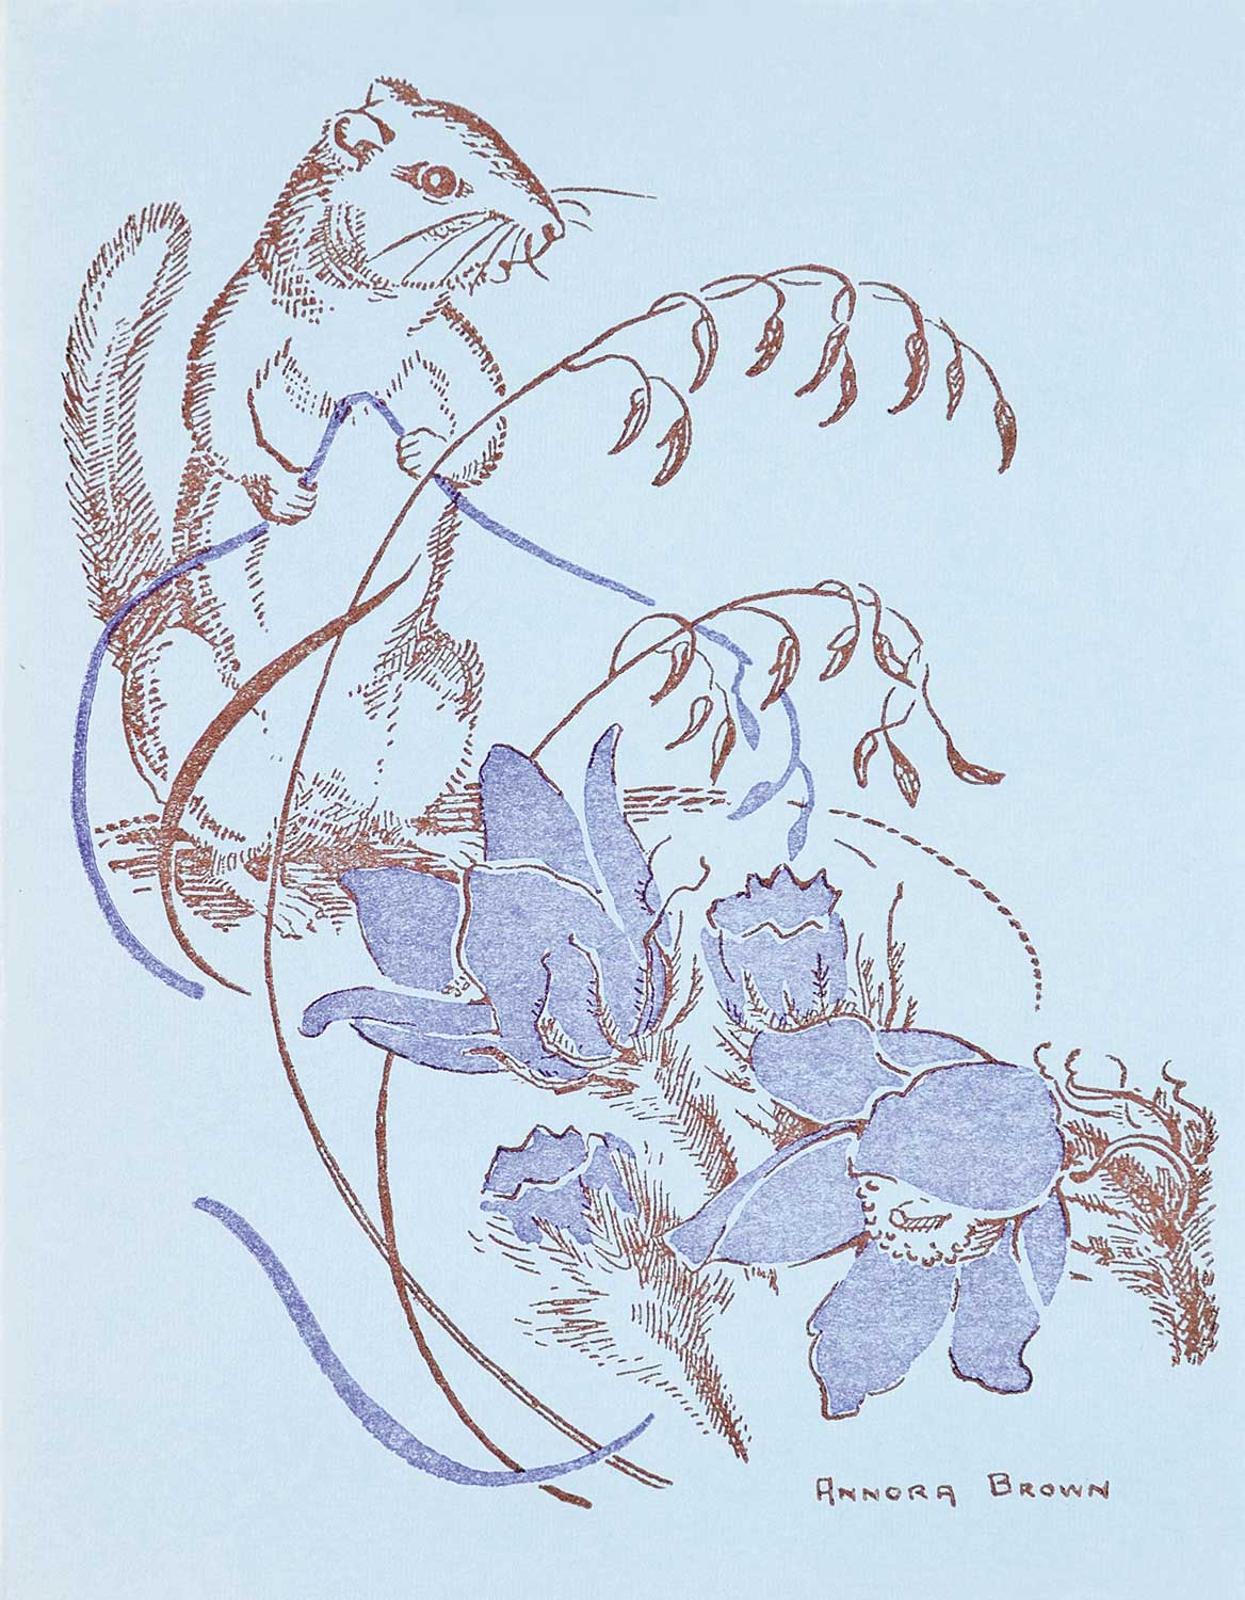 Annora Brown (1899-1987) - Untitled - Squirrel